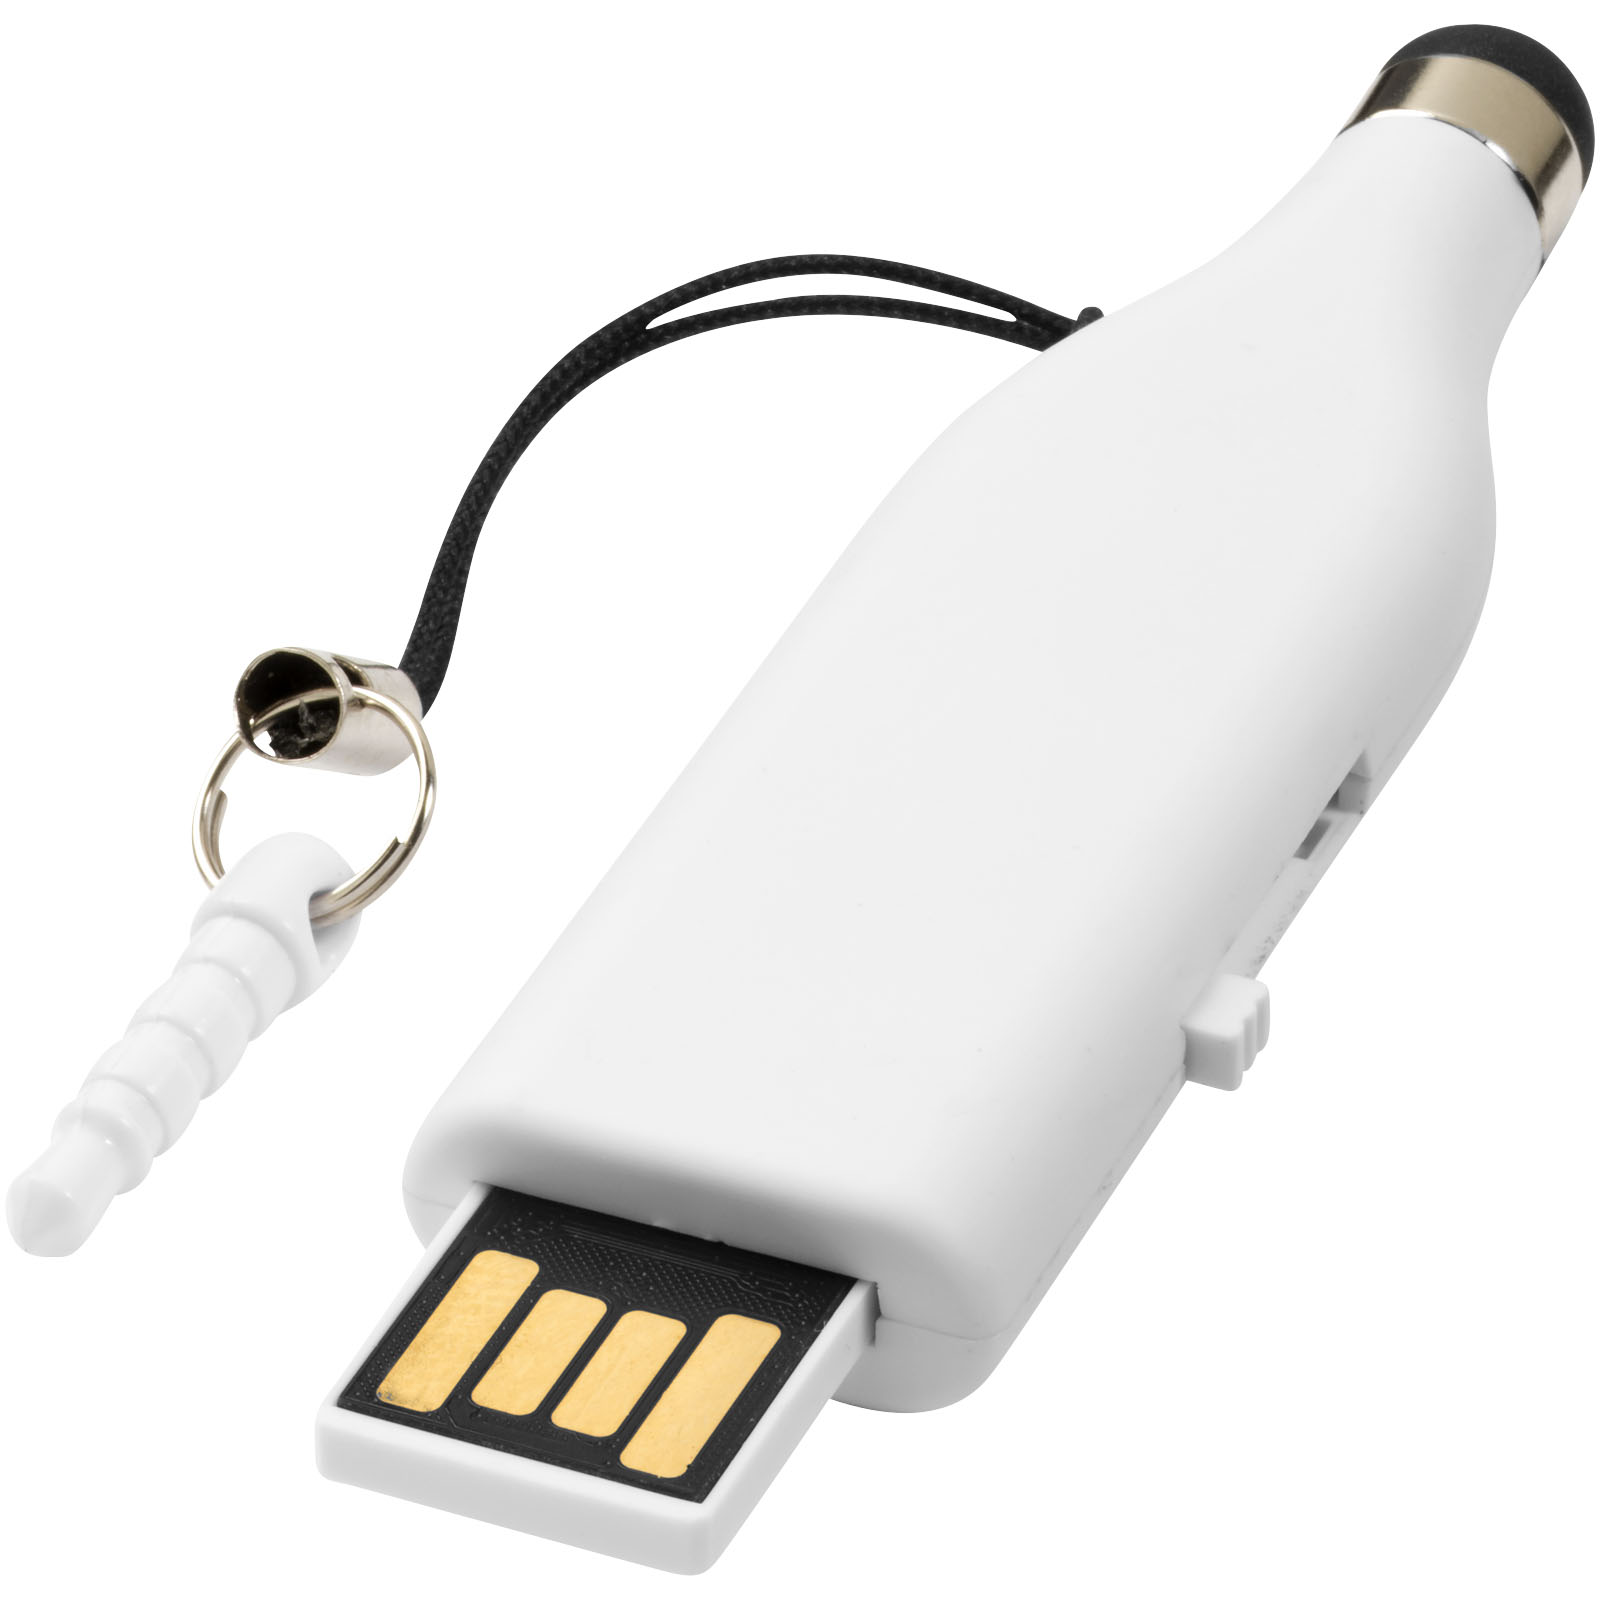 TouchPen USB - Certaldo